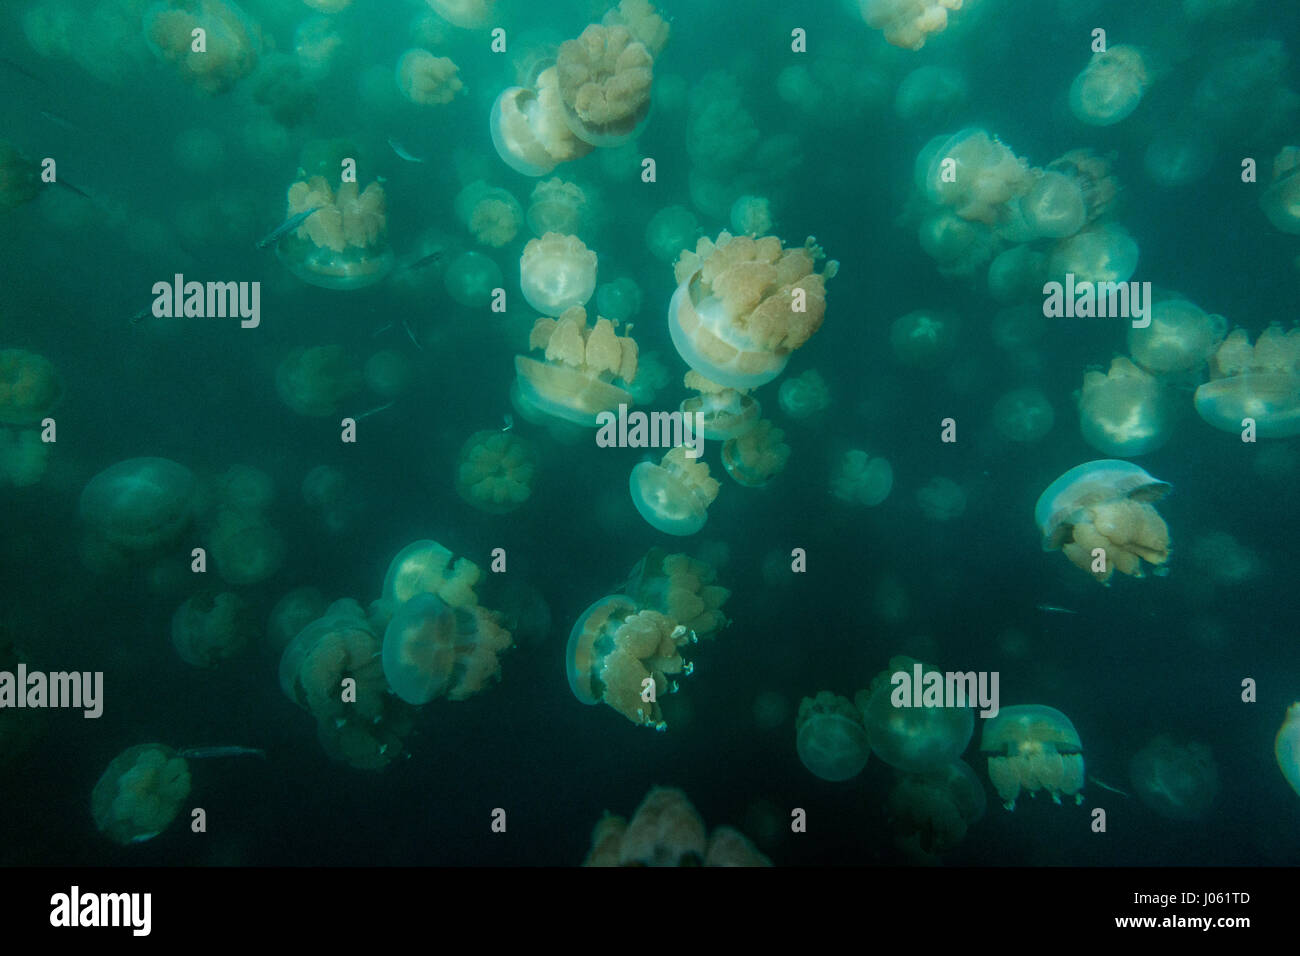 Lago di Medusa, PALAU: incredibili immagini e filmati mostra un uomo  tuffarsi in un lago circondato da centinaia di meduse. Le spettacolari  immagini mostrano il gran numero di Golden meduse, che per